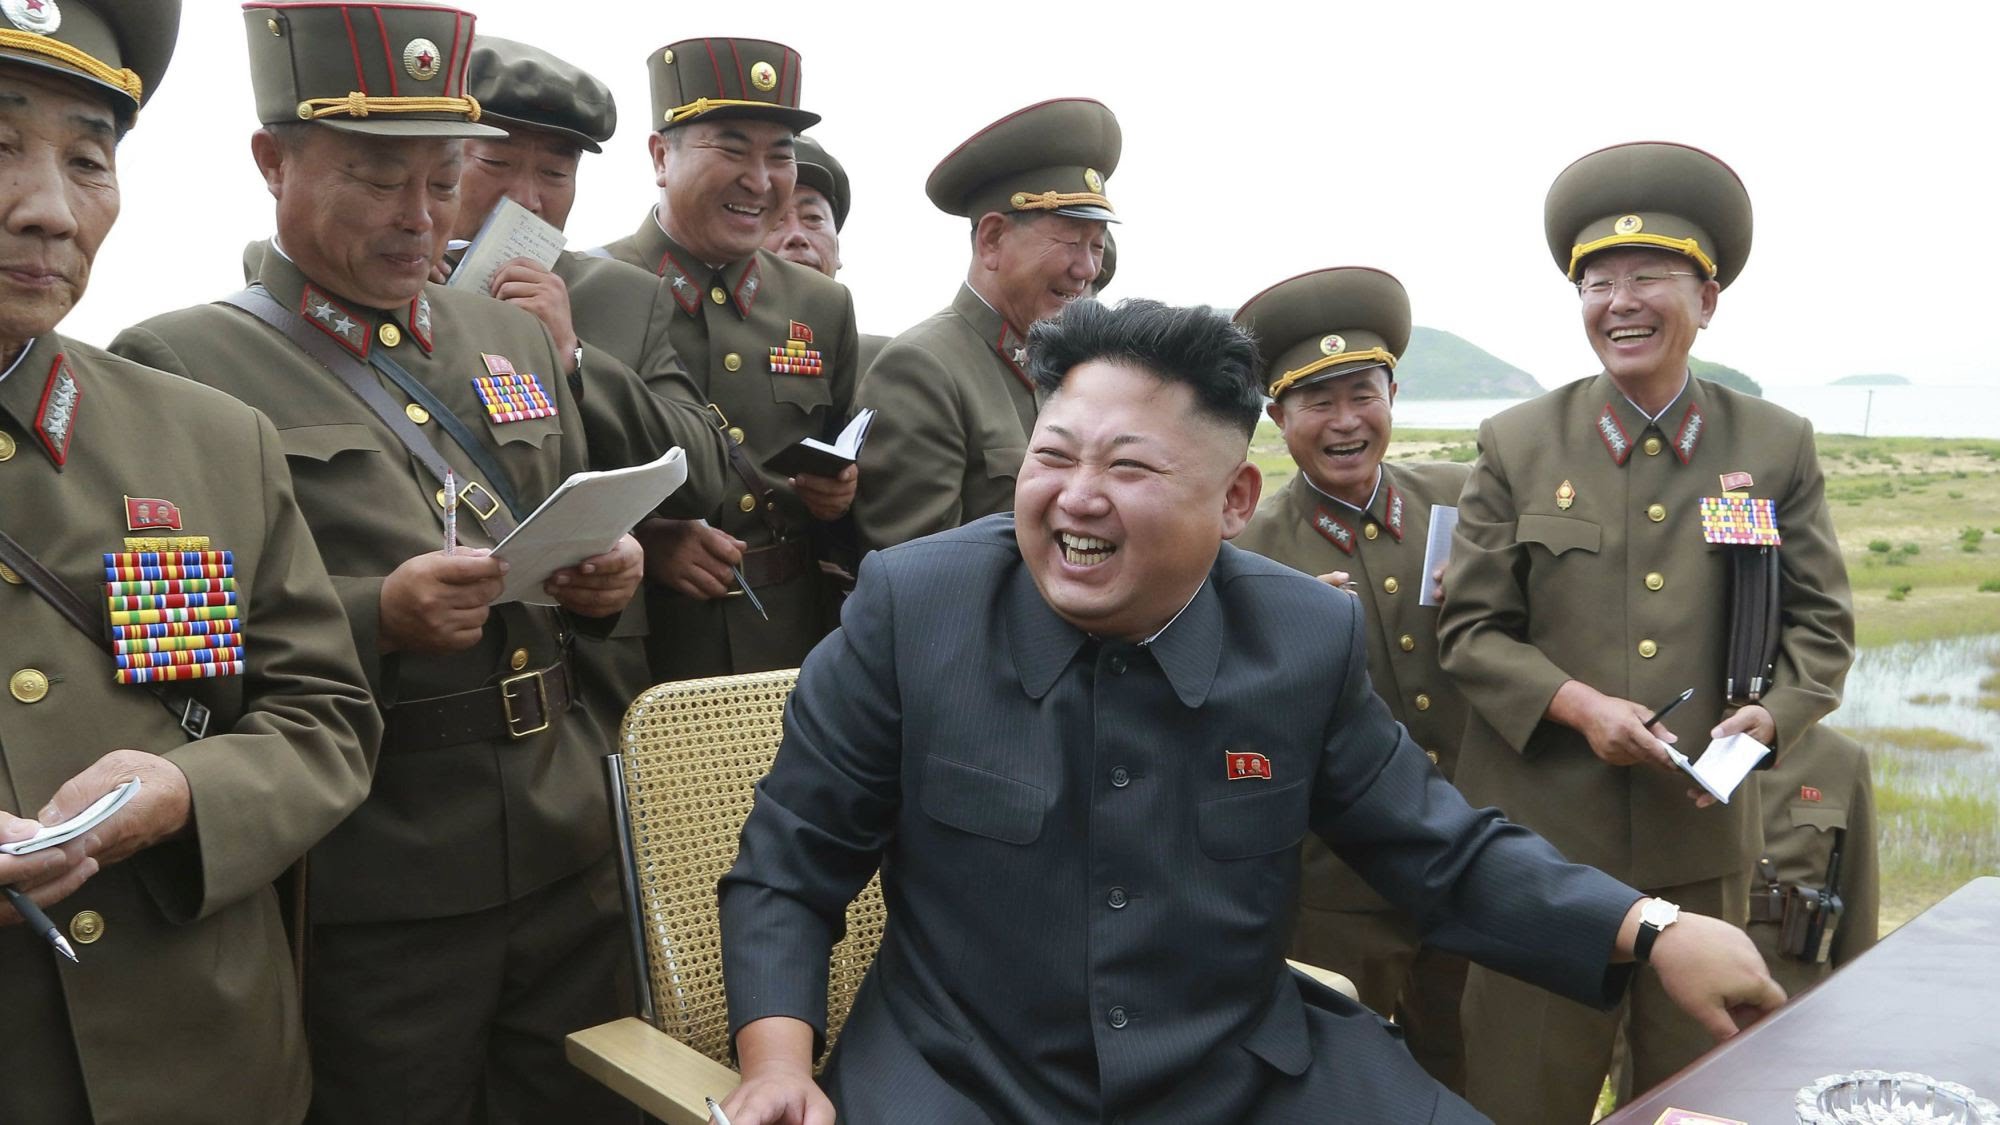 الصحافة الغربية تصف كوريا الشمالية بالدولة النووية الكاملة وتصف الصاروخ البالستي "الليلي" بالحدث المدوي